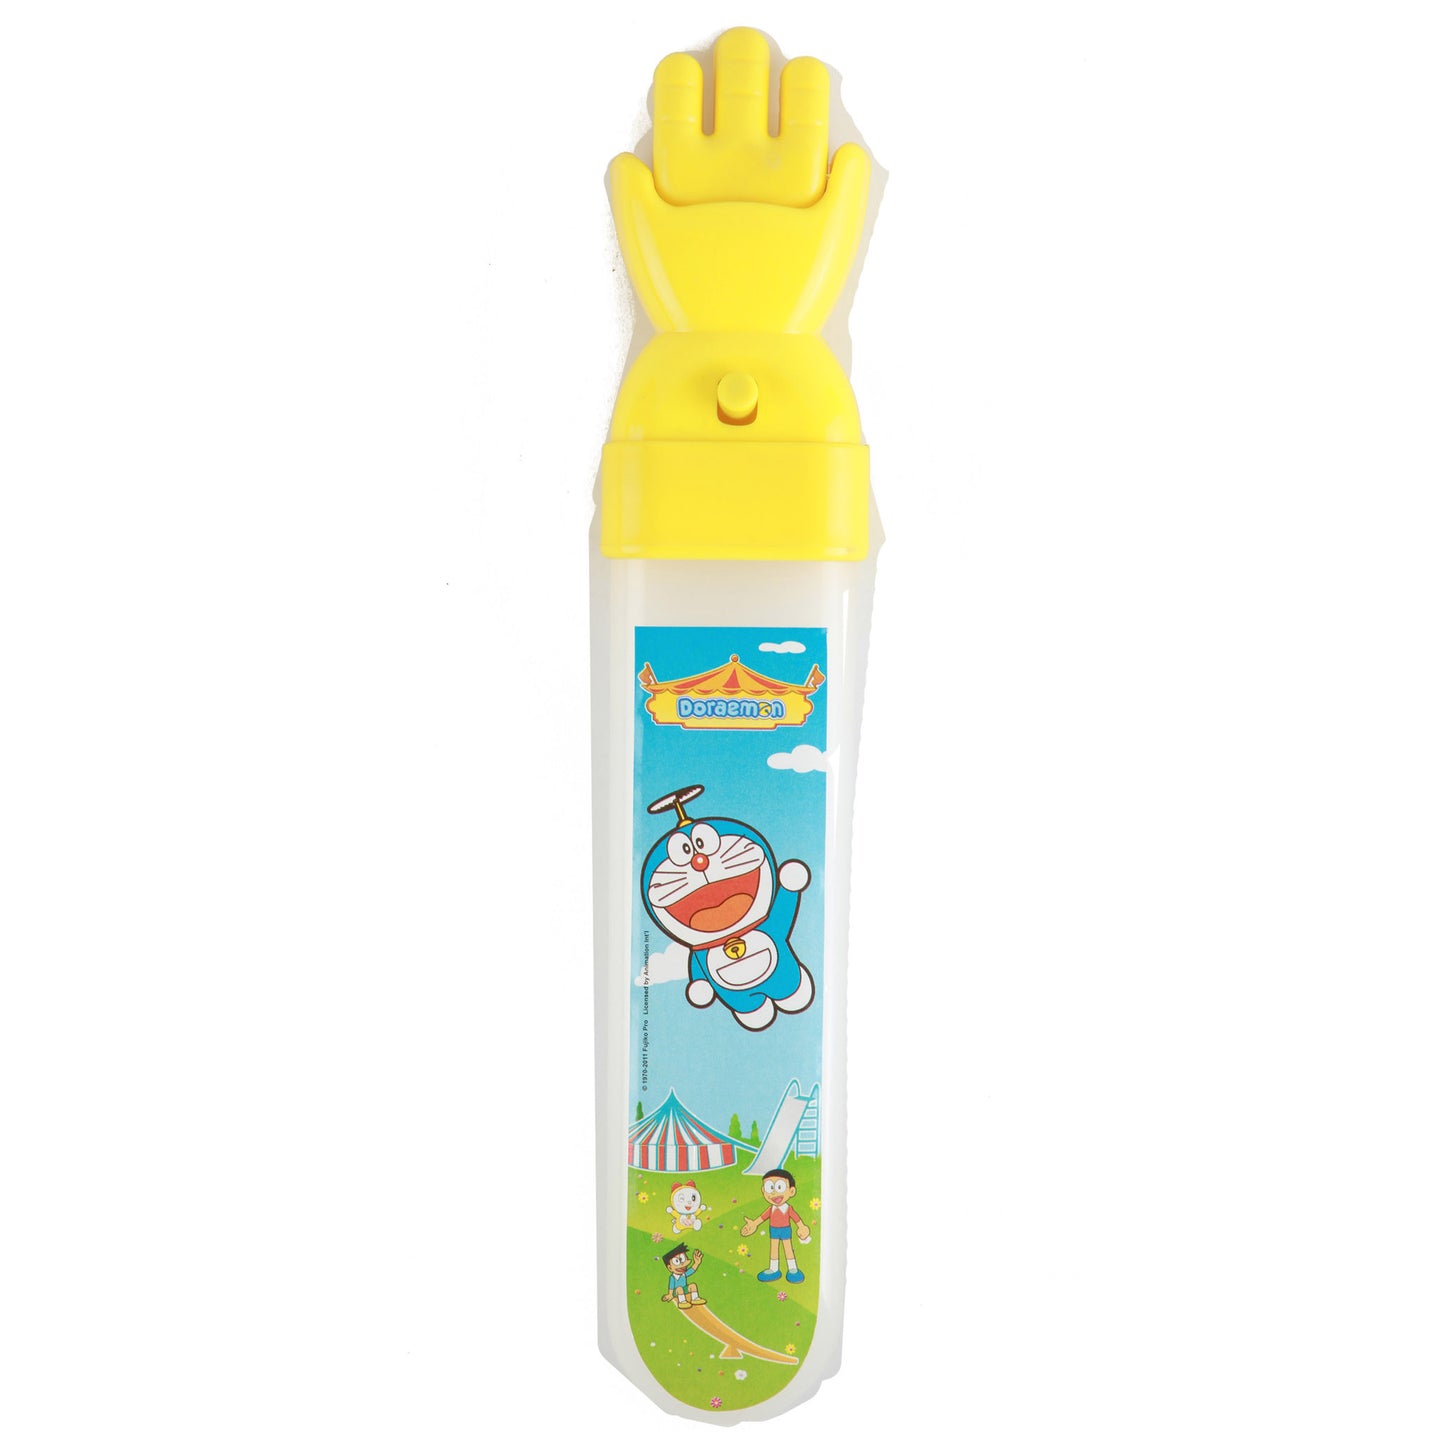 Doraemon Magic Hand